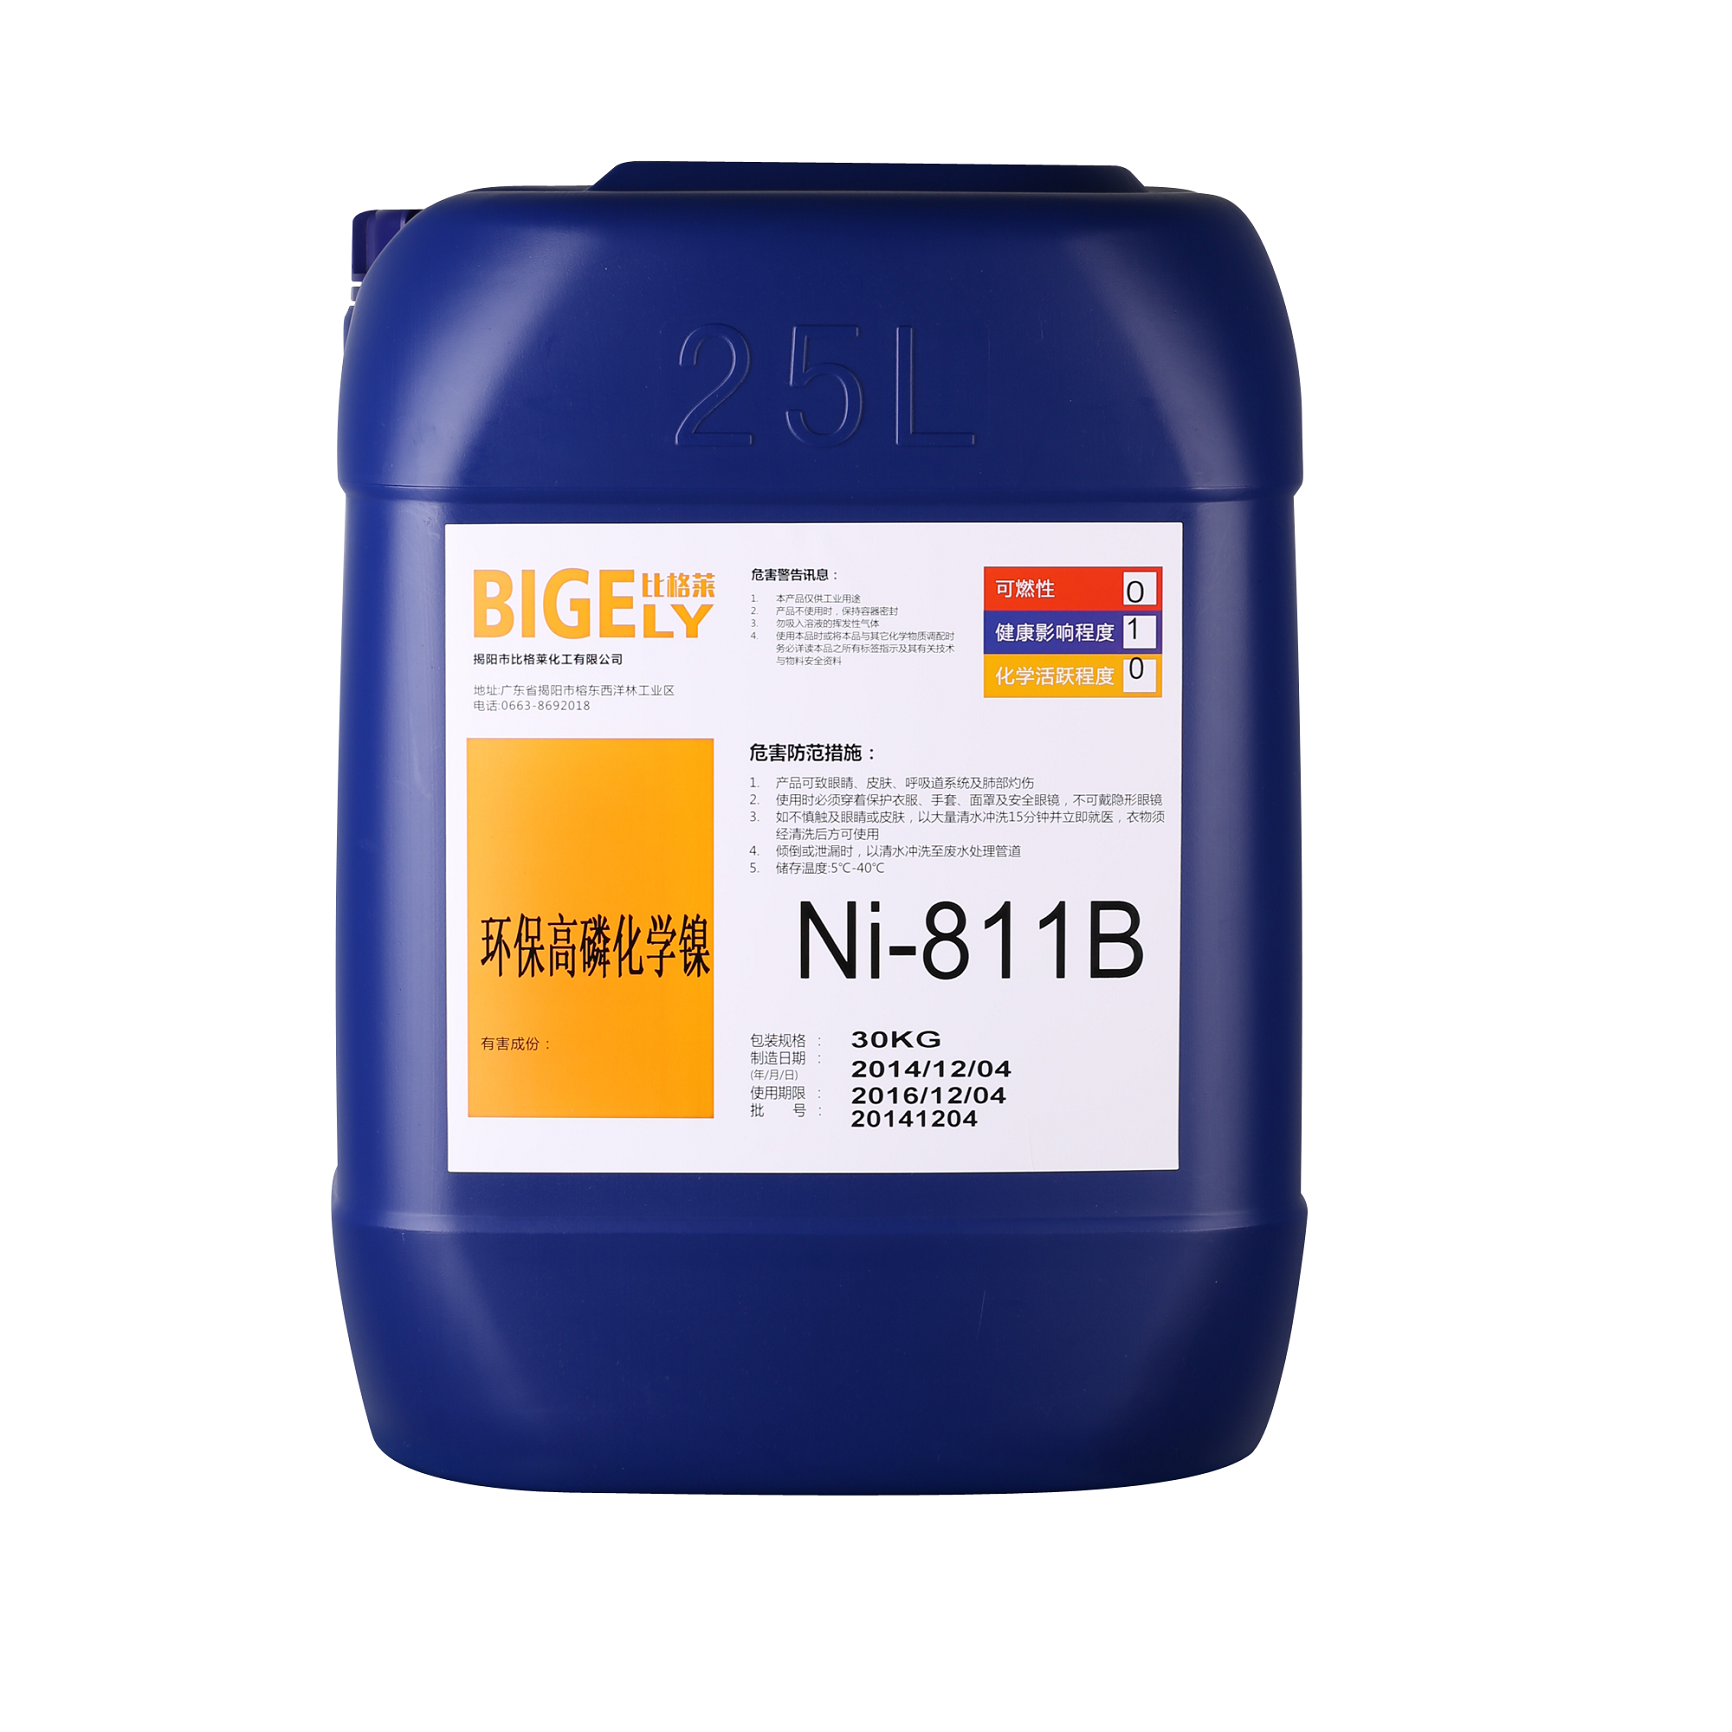 化学镍系列-Ni-811B环保高磷化学镍